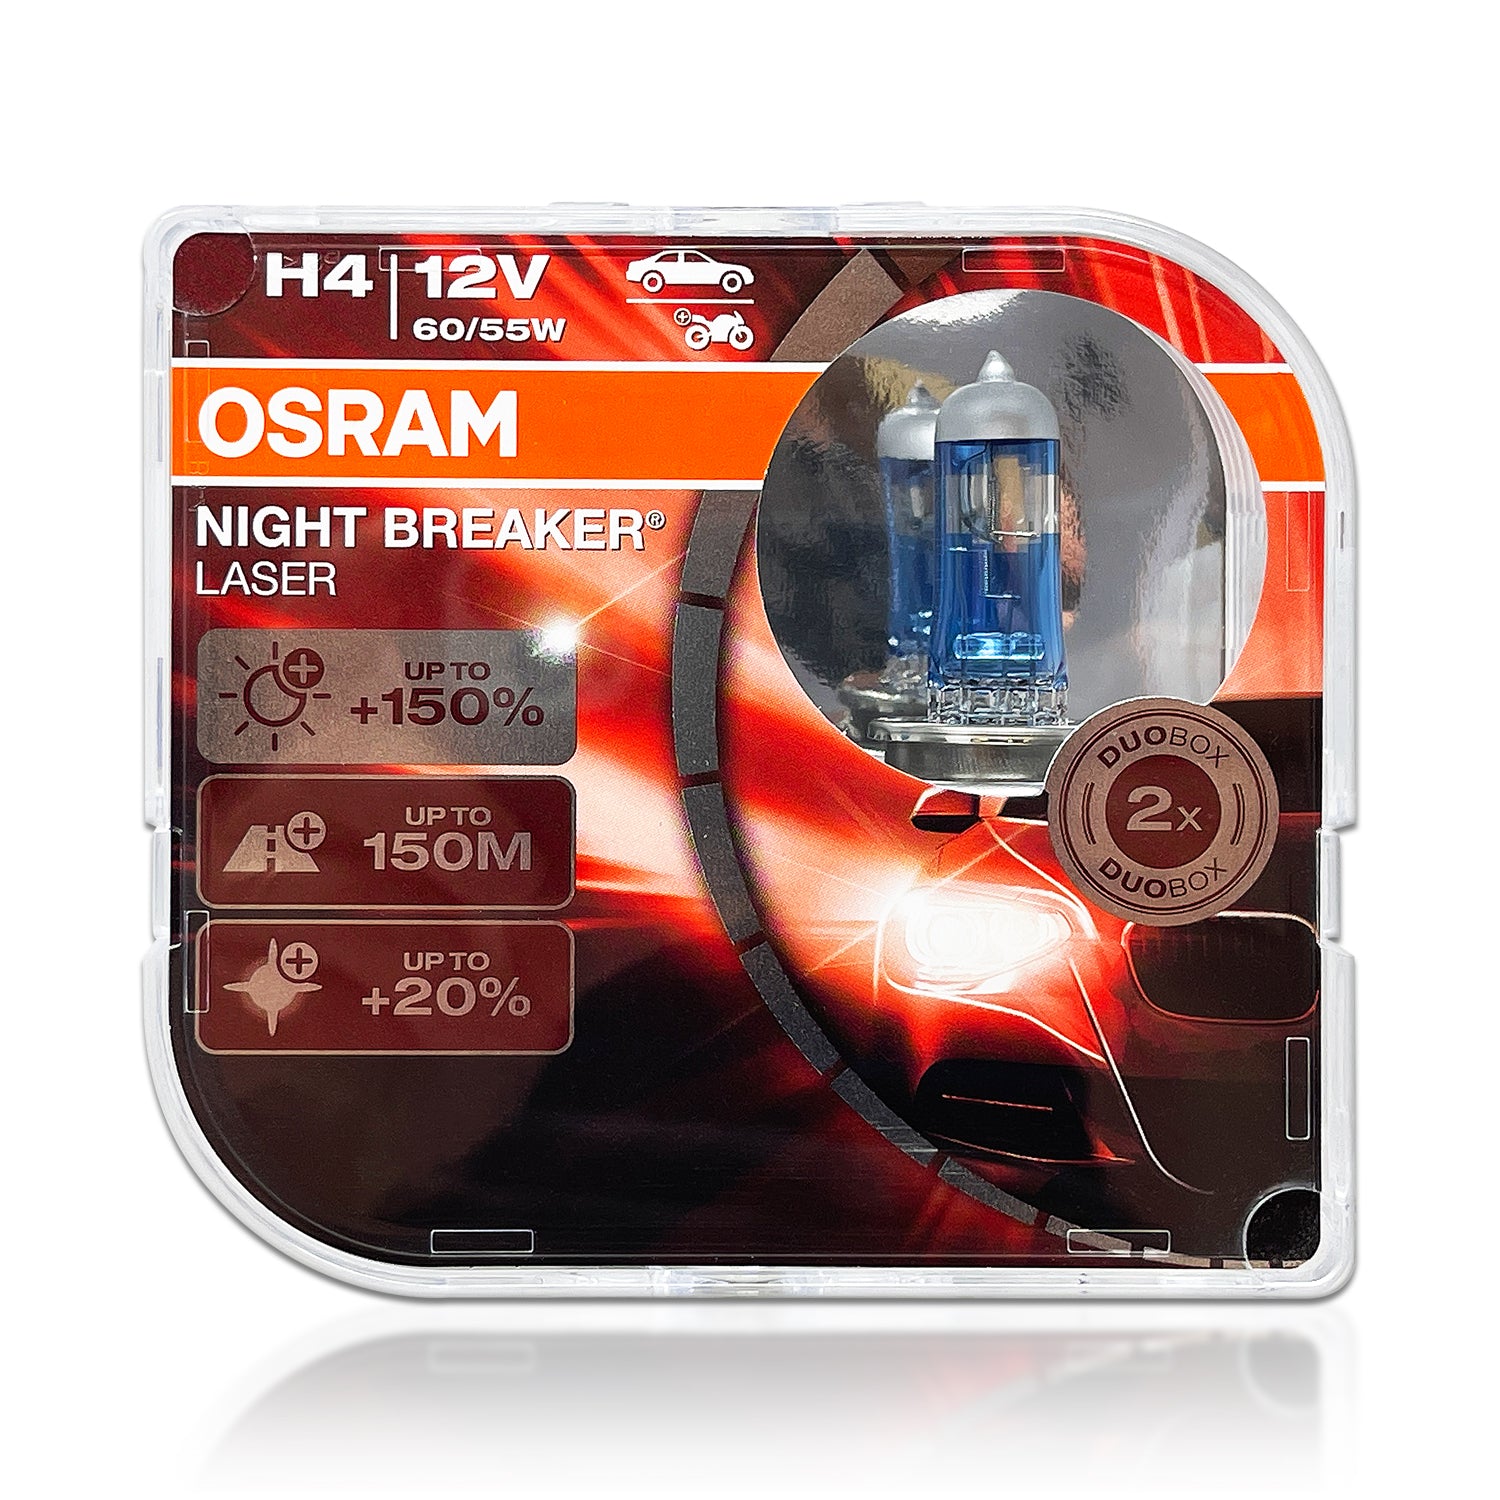 OSRAM NIGHT BREAKER LASER Headlight NEXT GEN Bulbs H4 +150% 60W/55W for LOW  BEAM